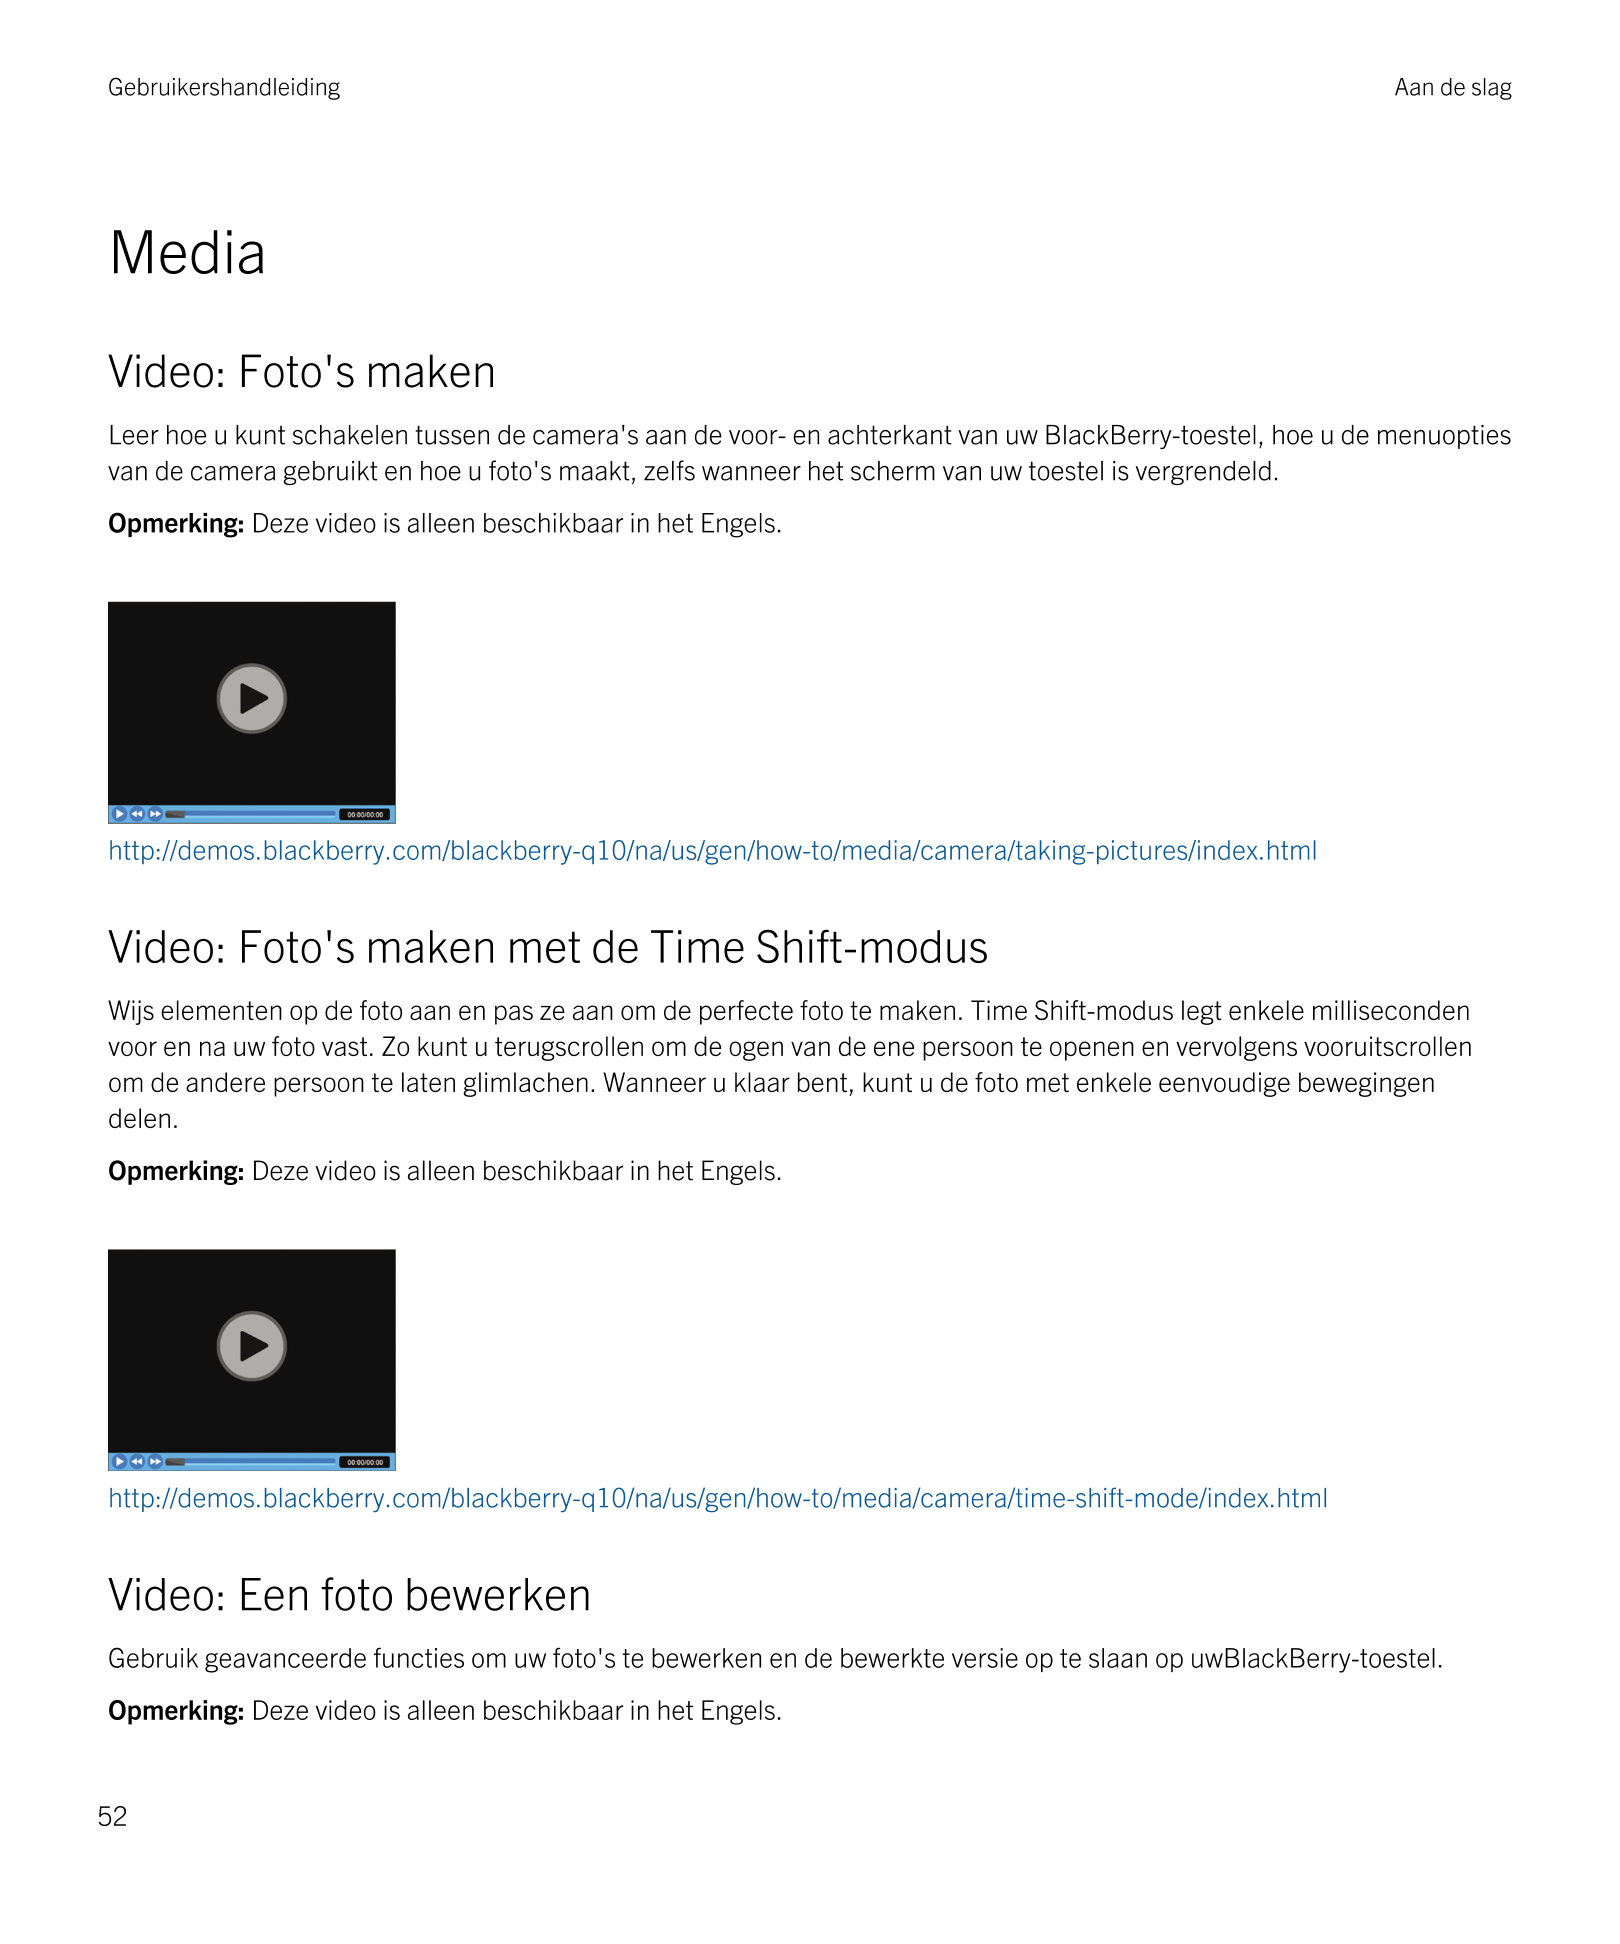 Gebruikershandleiding Aan de slag
Media
Video: Foto's maken
Leer hoe u kunt schakelen tussen de camera's aan de voor- en achterk